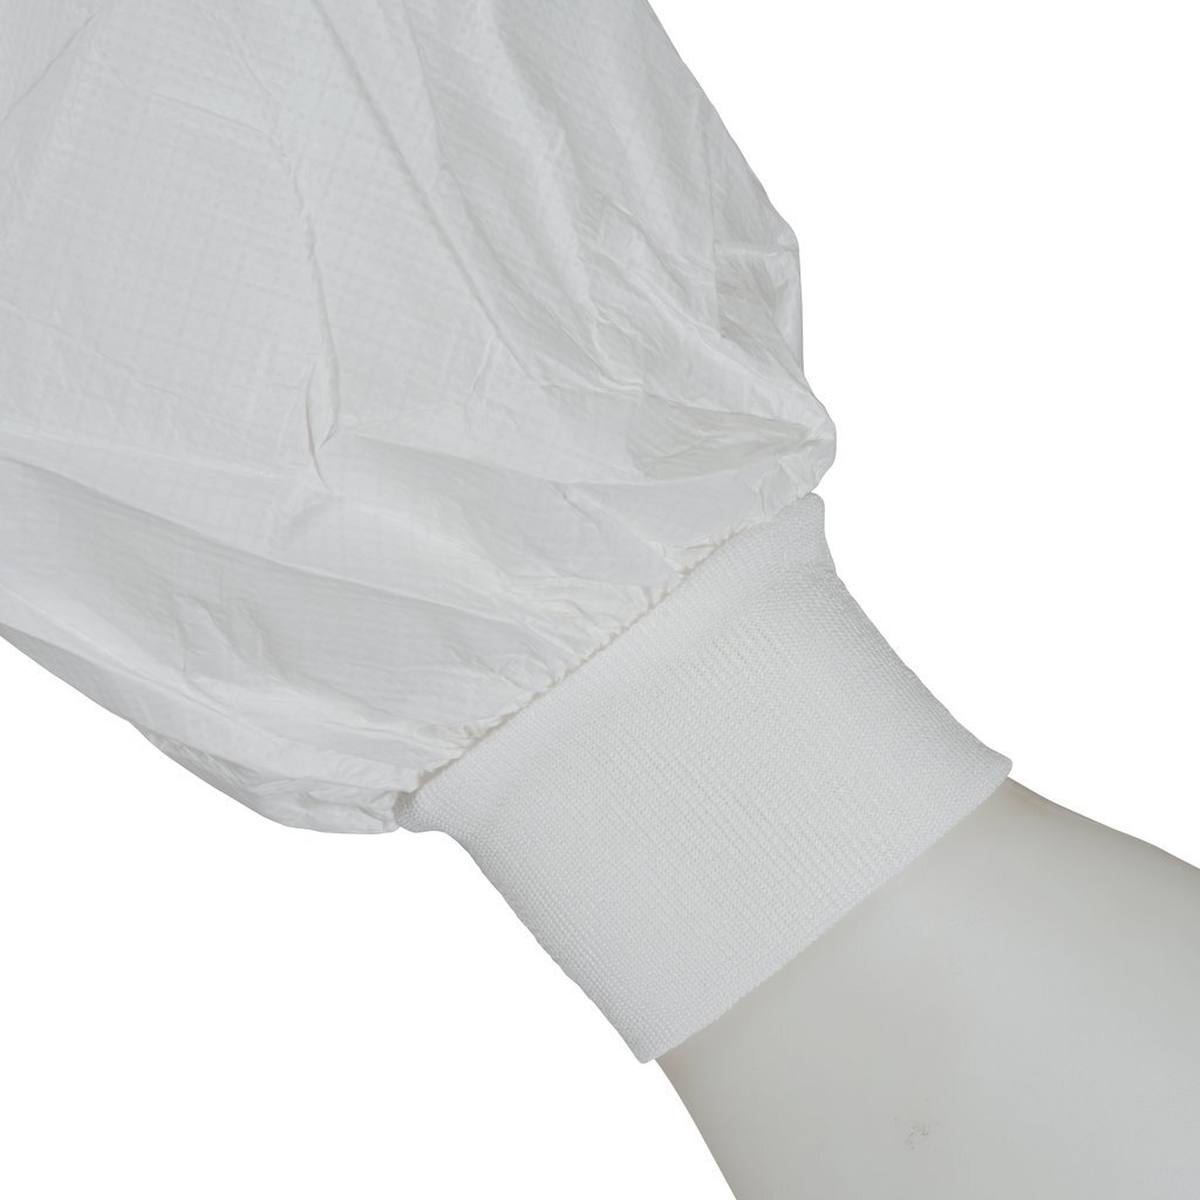 Cappotto 3M 4440, bianco, taglia M, particolarmente traspirante, molto leggero, con cerniera, polsini in maglia